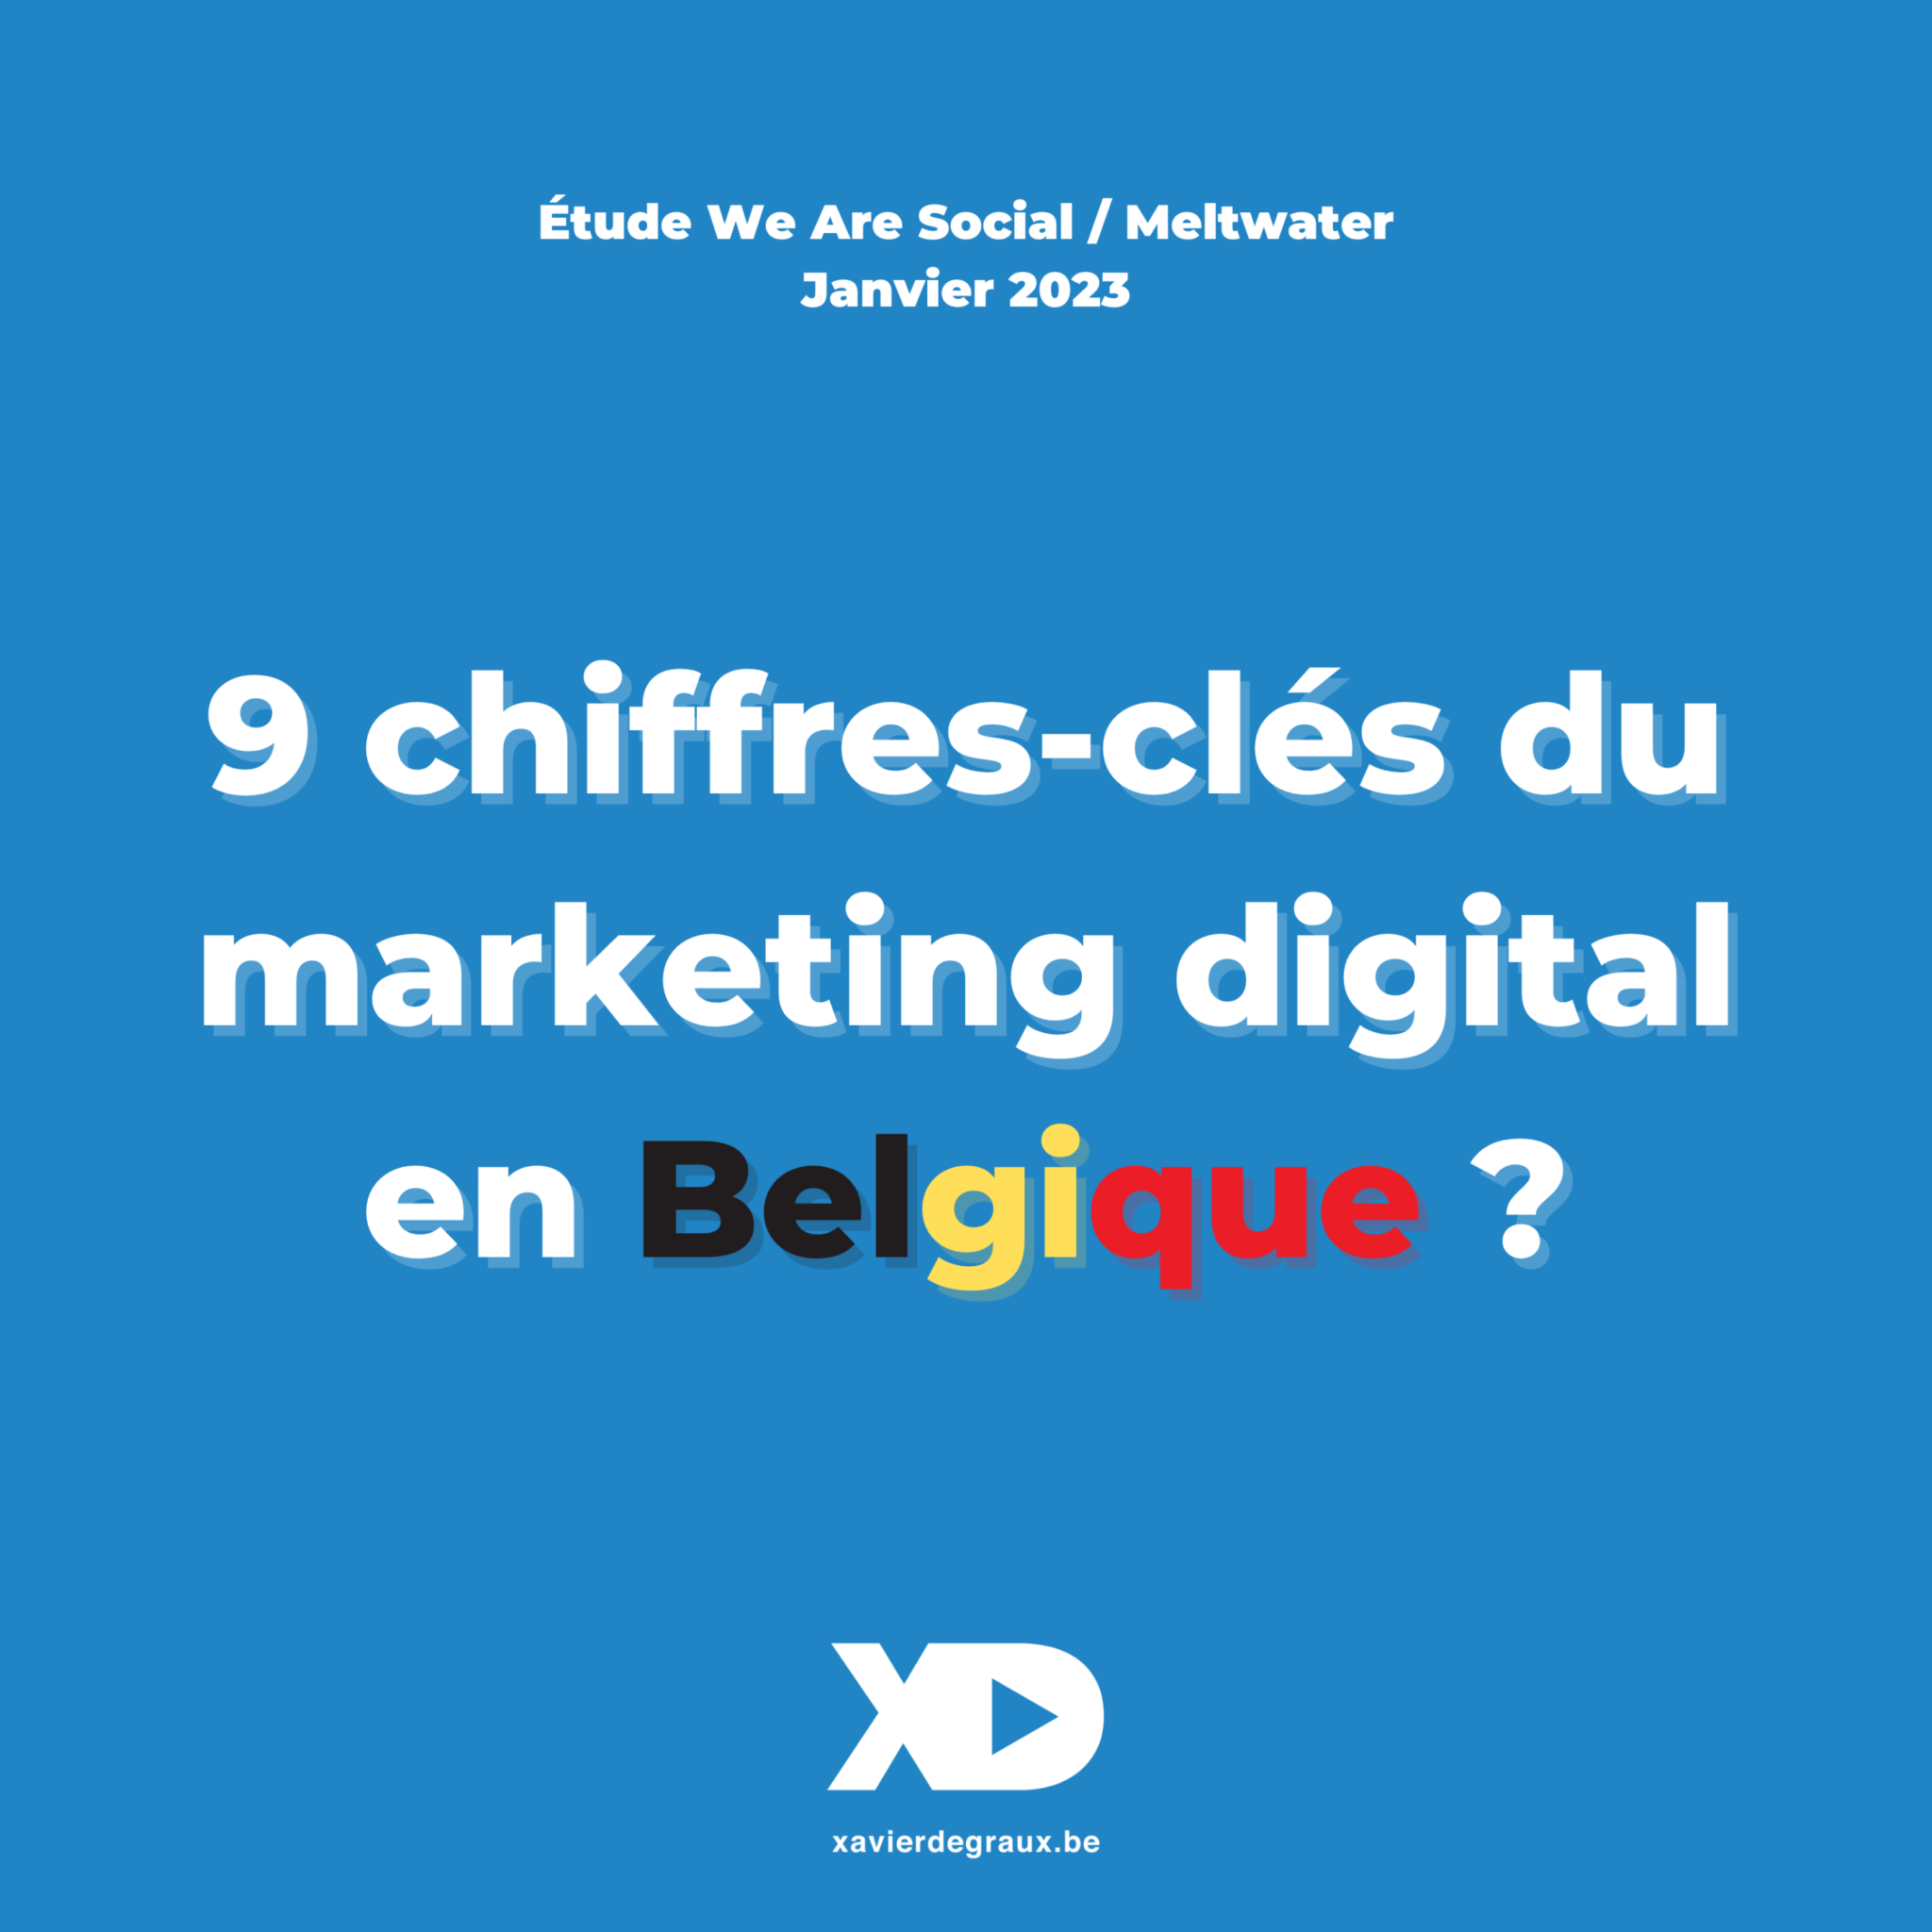 9 chiffres-clés du marketing digital en Belgique (étude 2023)